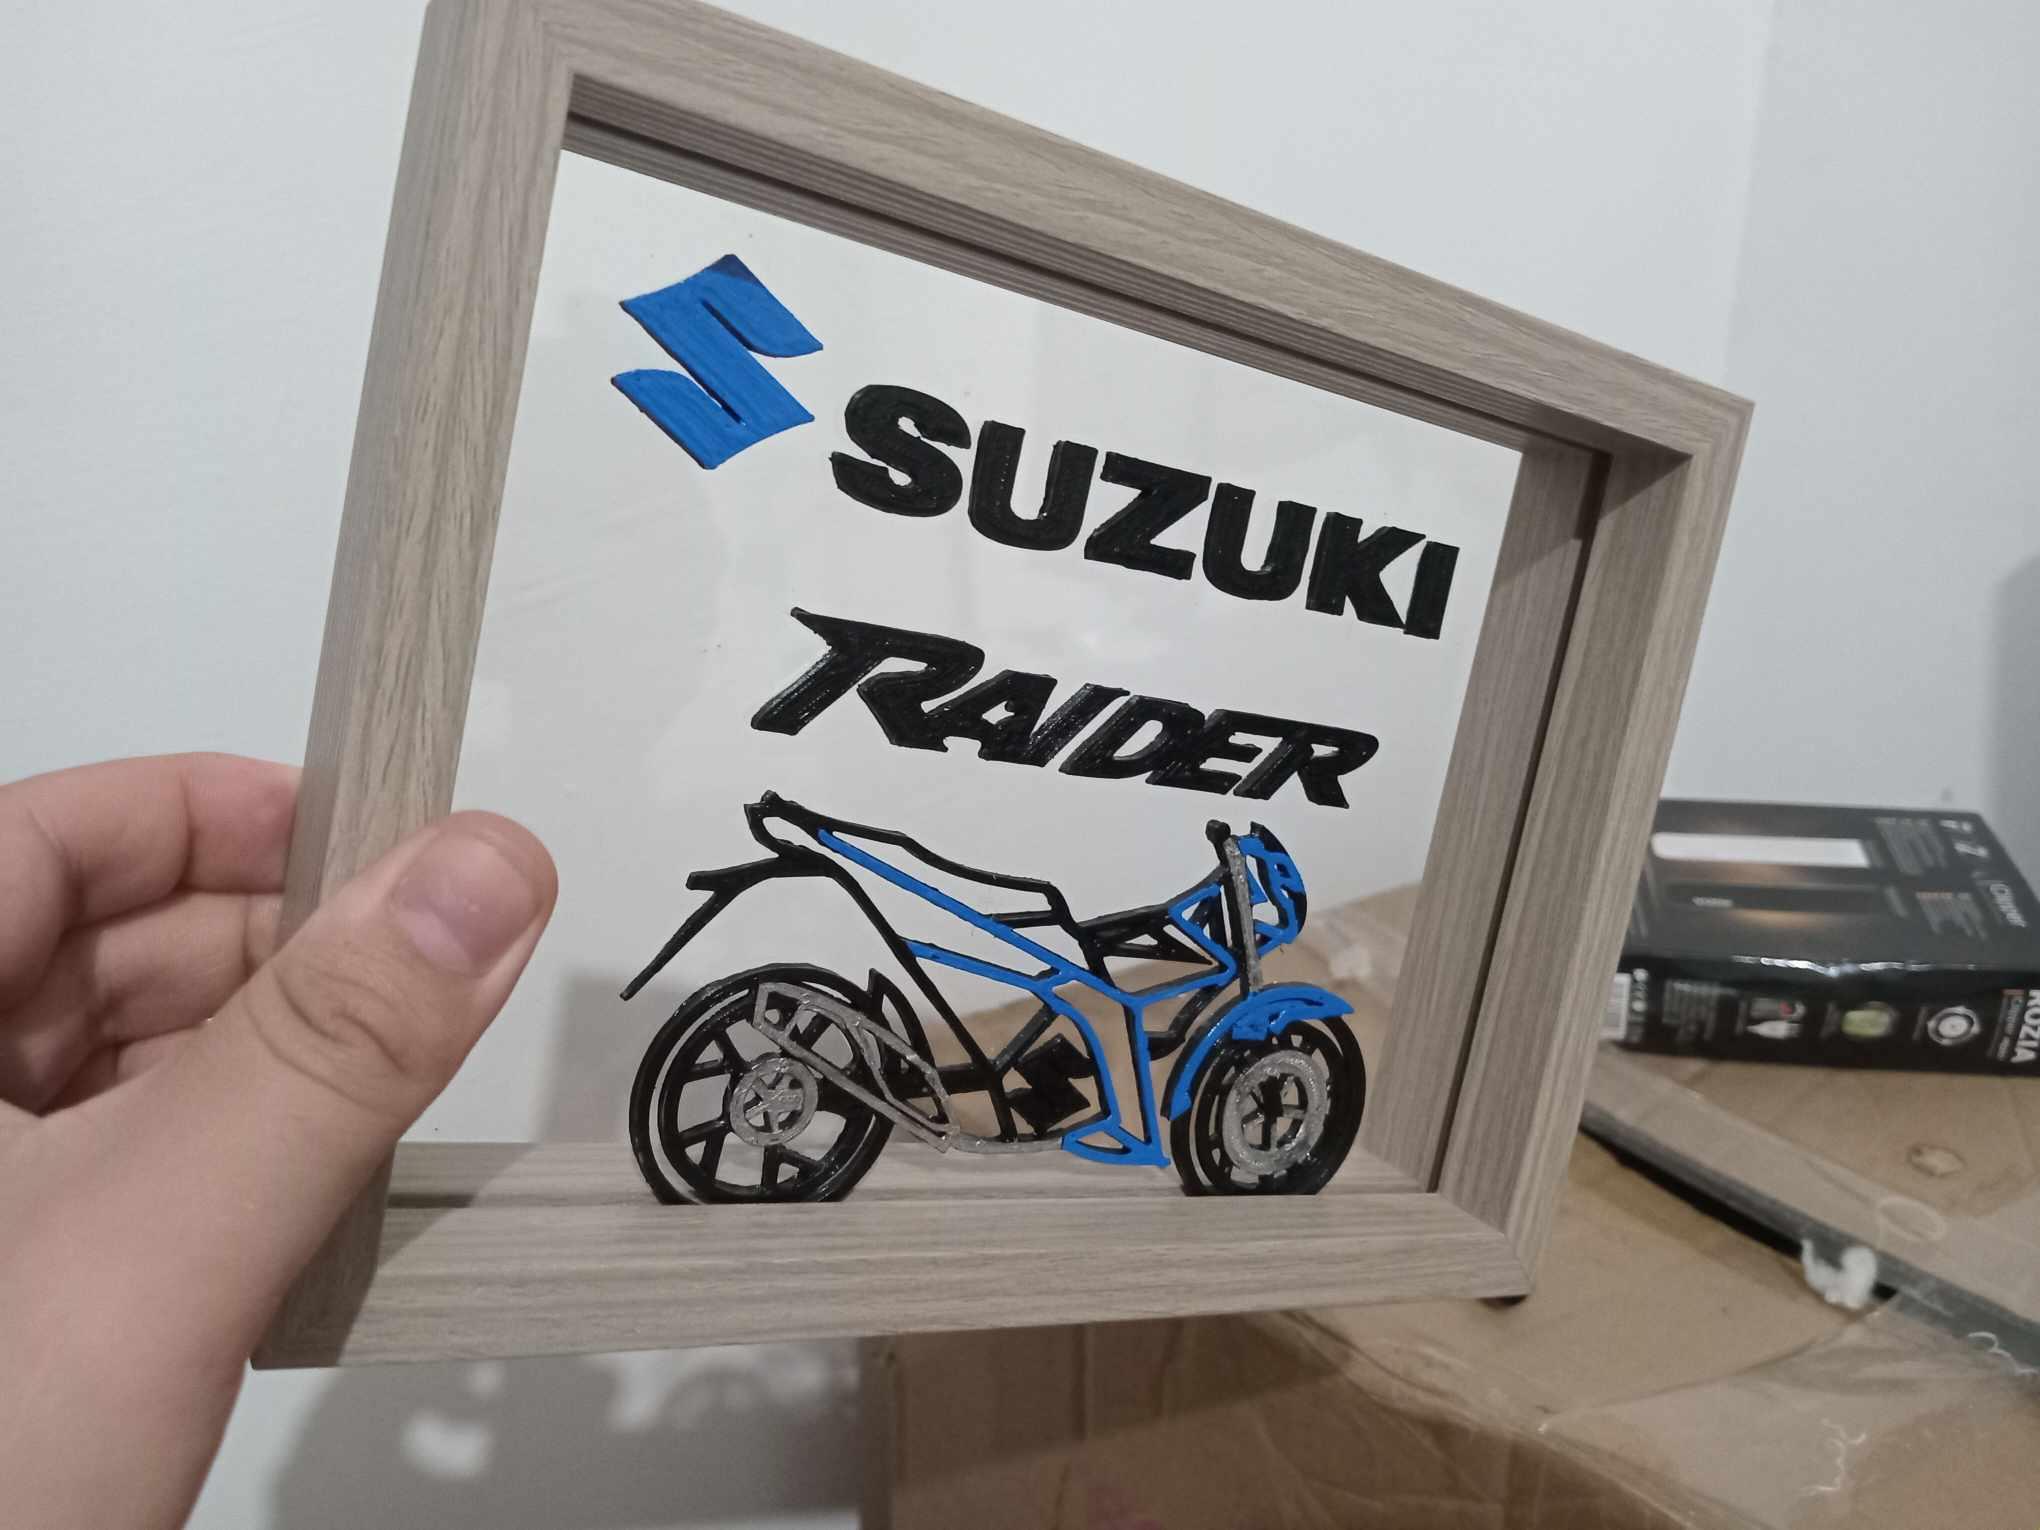 Suzuki Raider Display 3d model